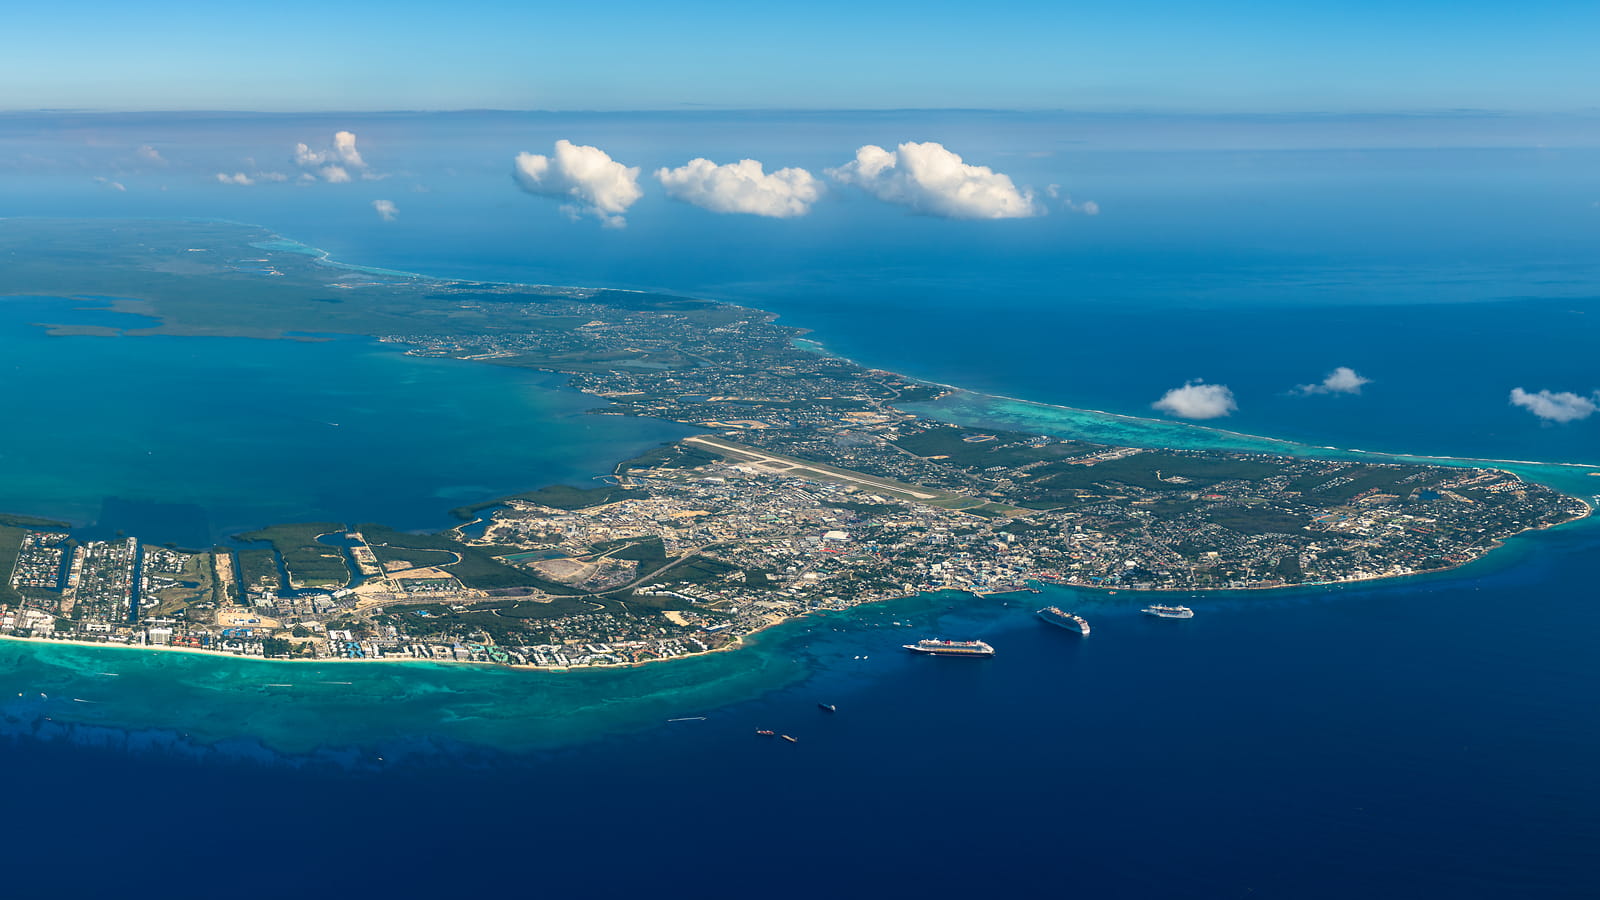 Photos of the Cayman Islands - VAST